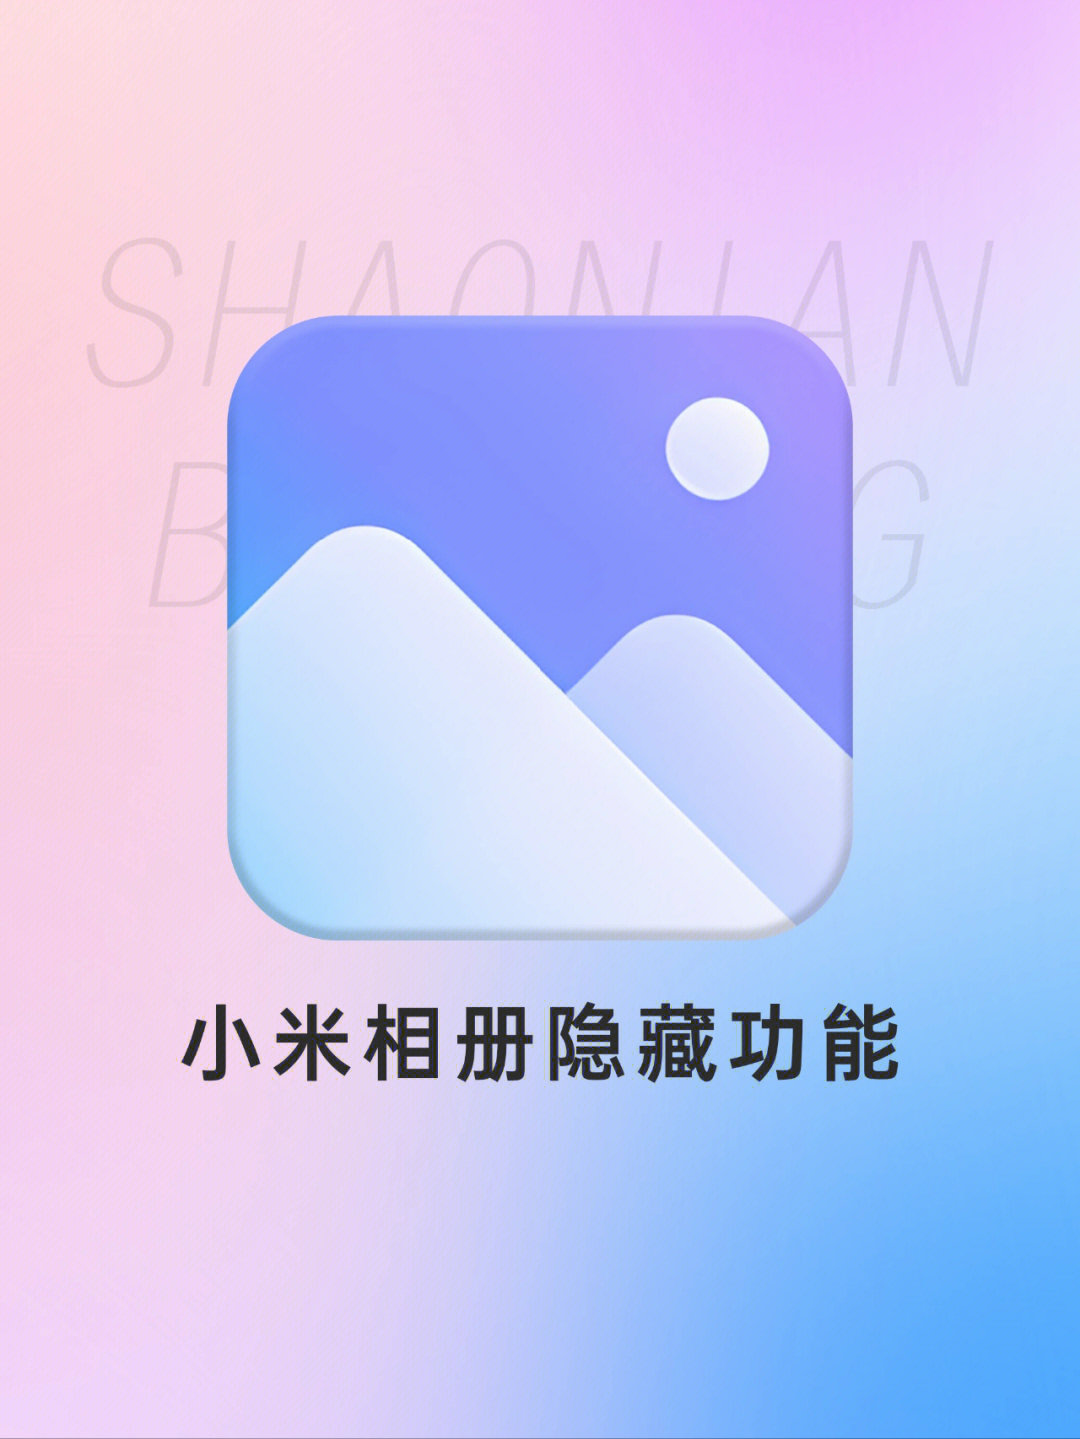 小米相册logo图片